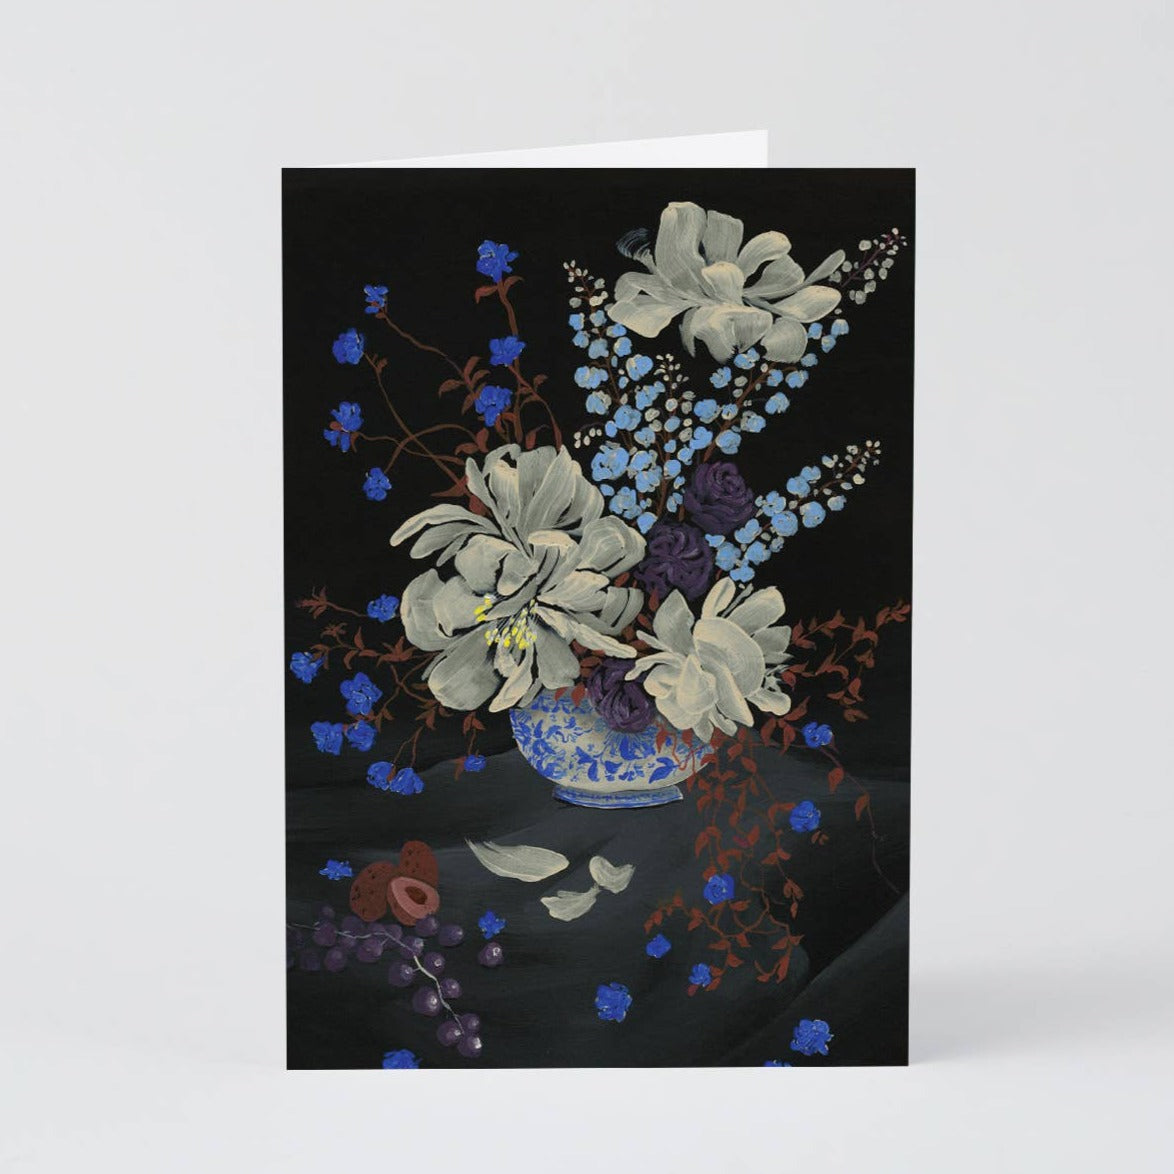 Blue Bouquet Card